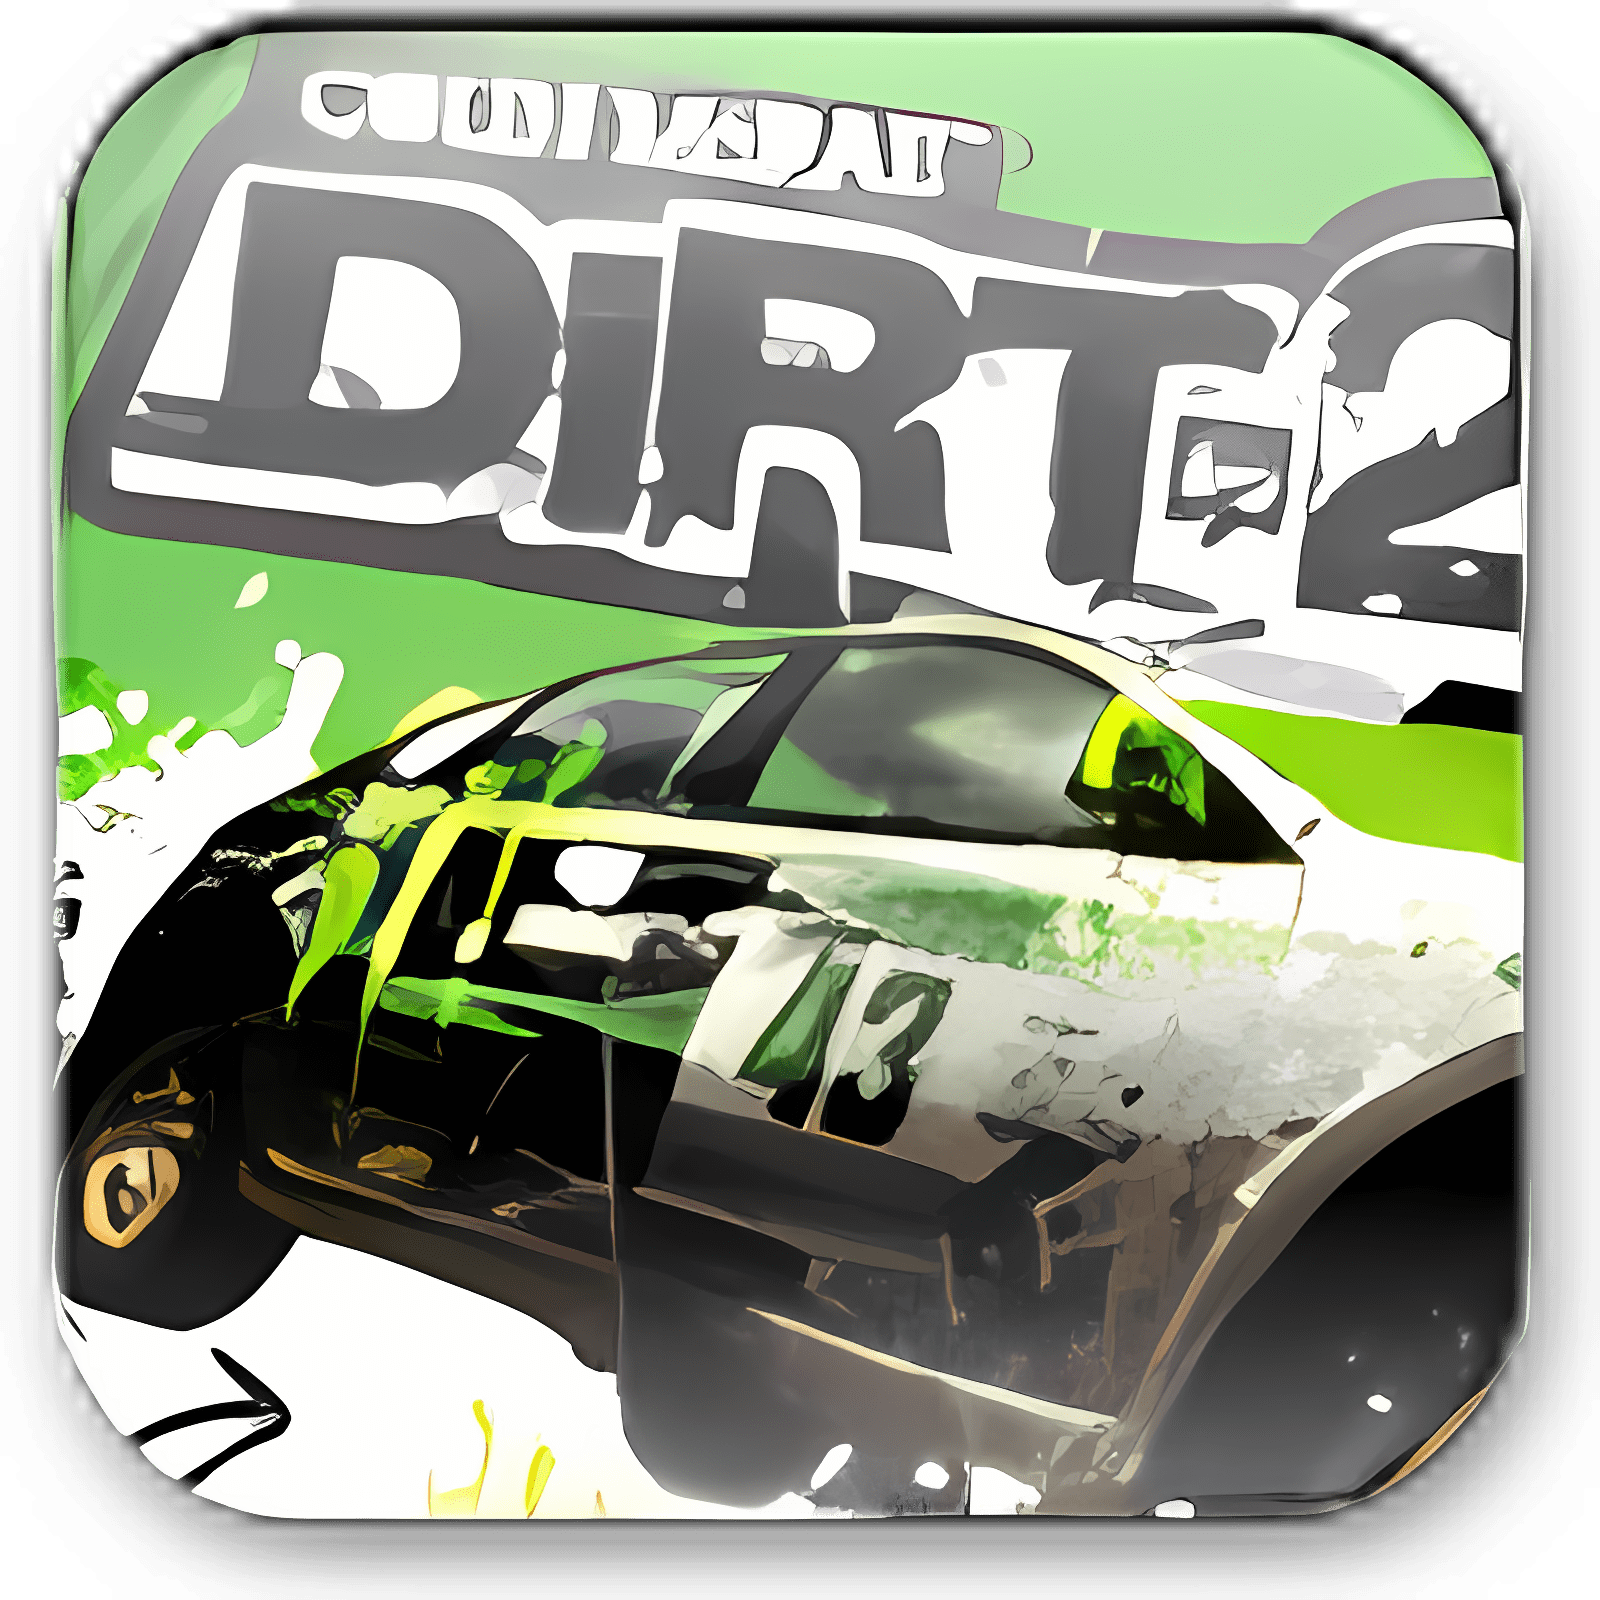 dirt 2 free download mac